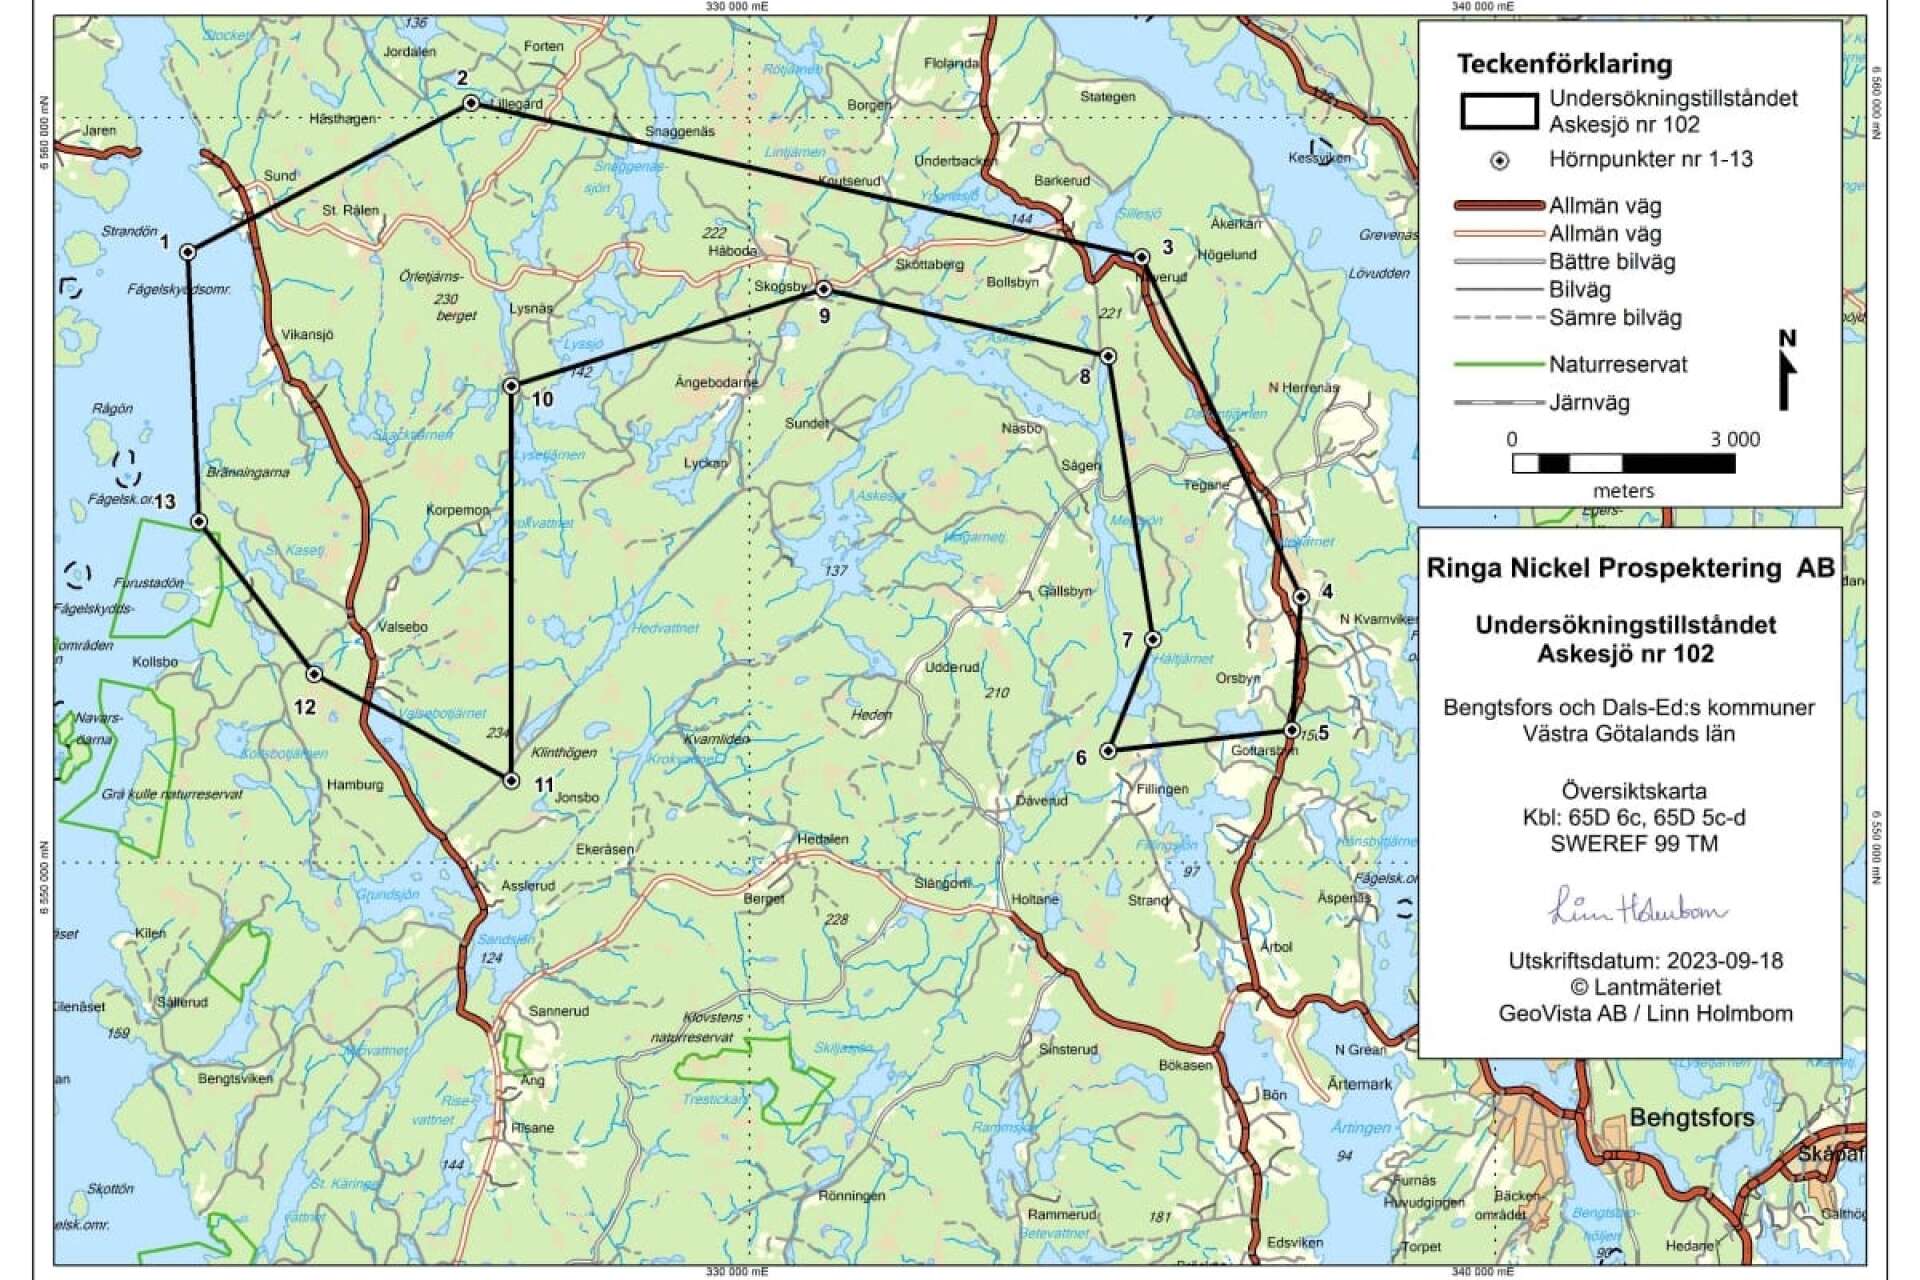 EMX Royalty vill utöka undersökningsområdet Askesjö 101 med 5 500 hektar.